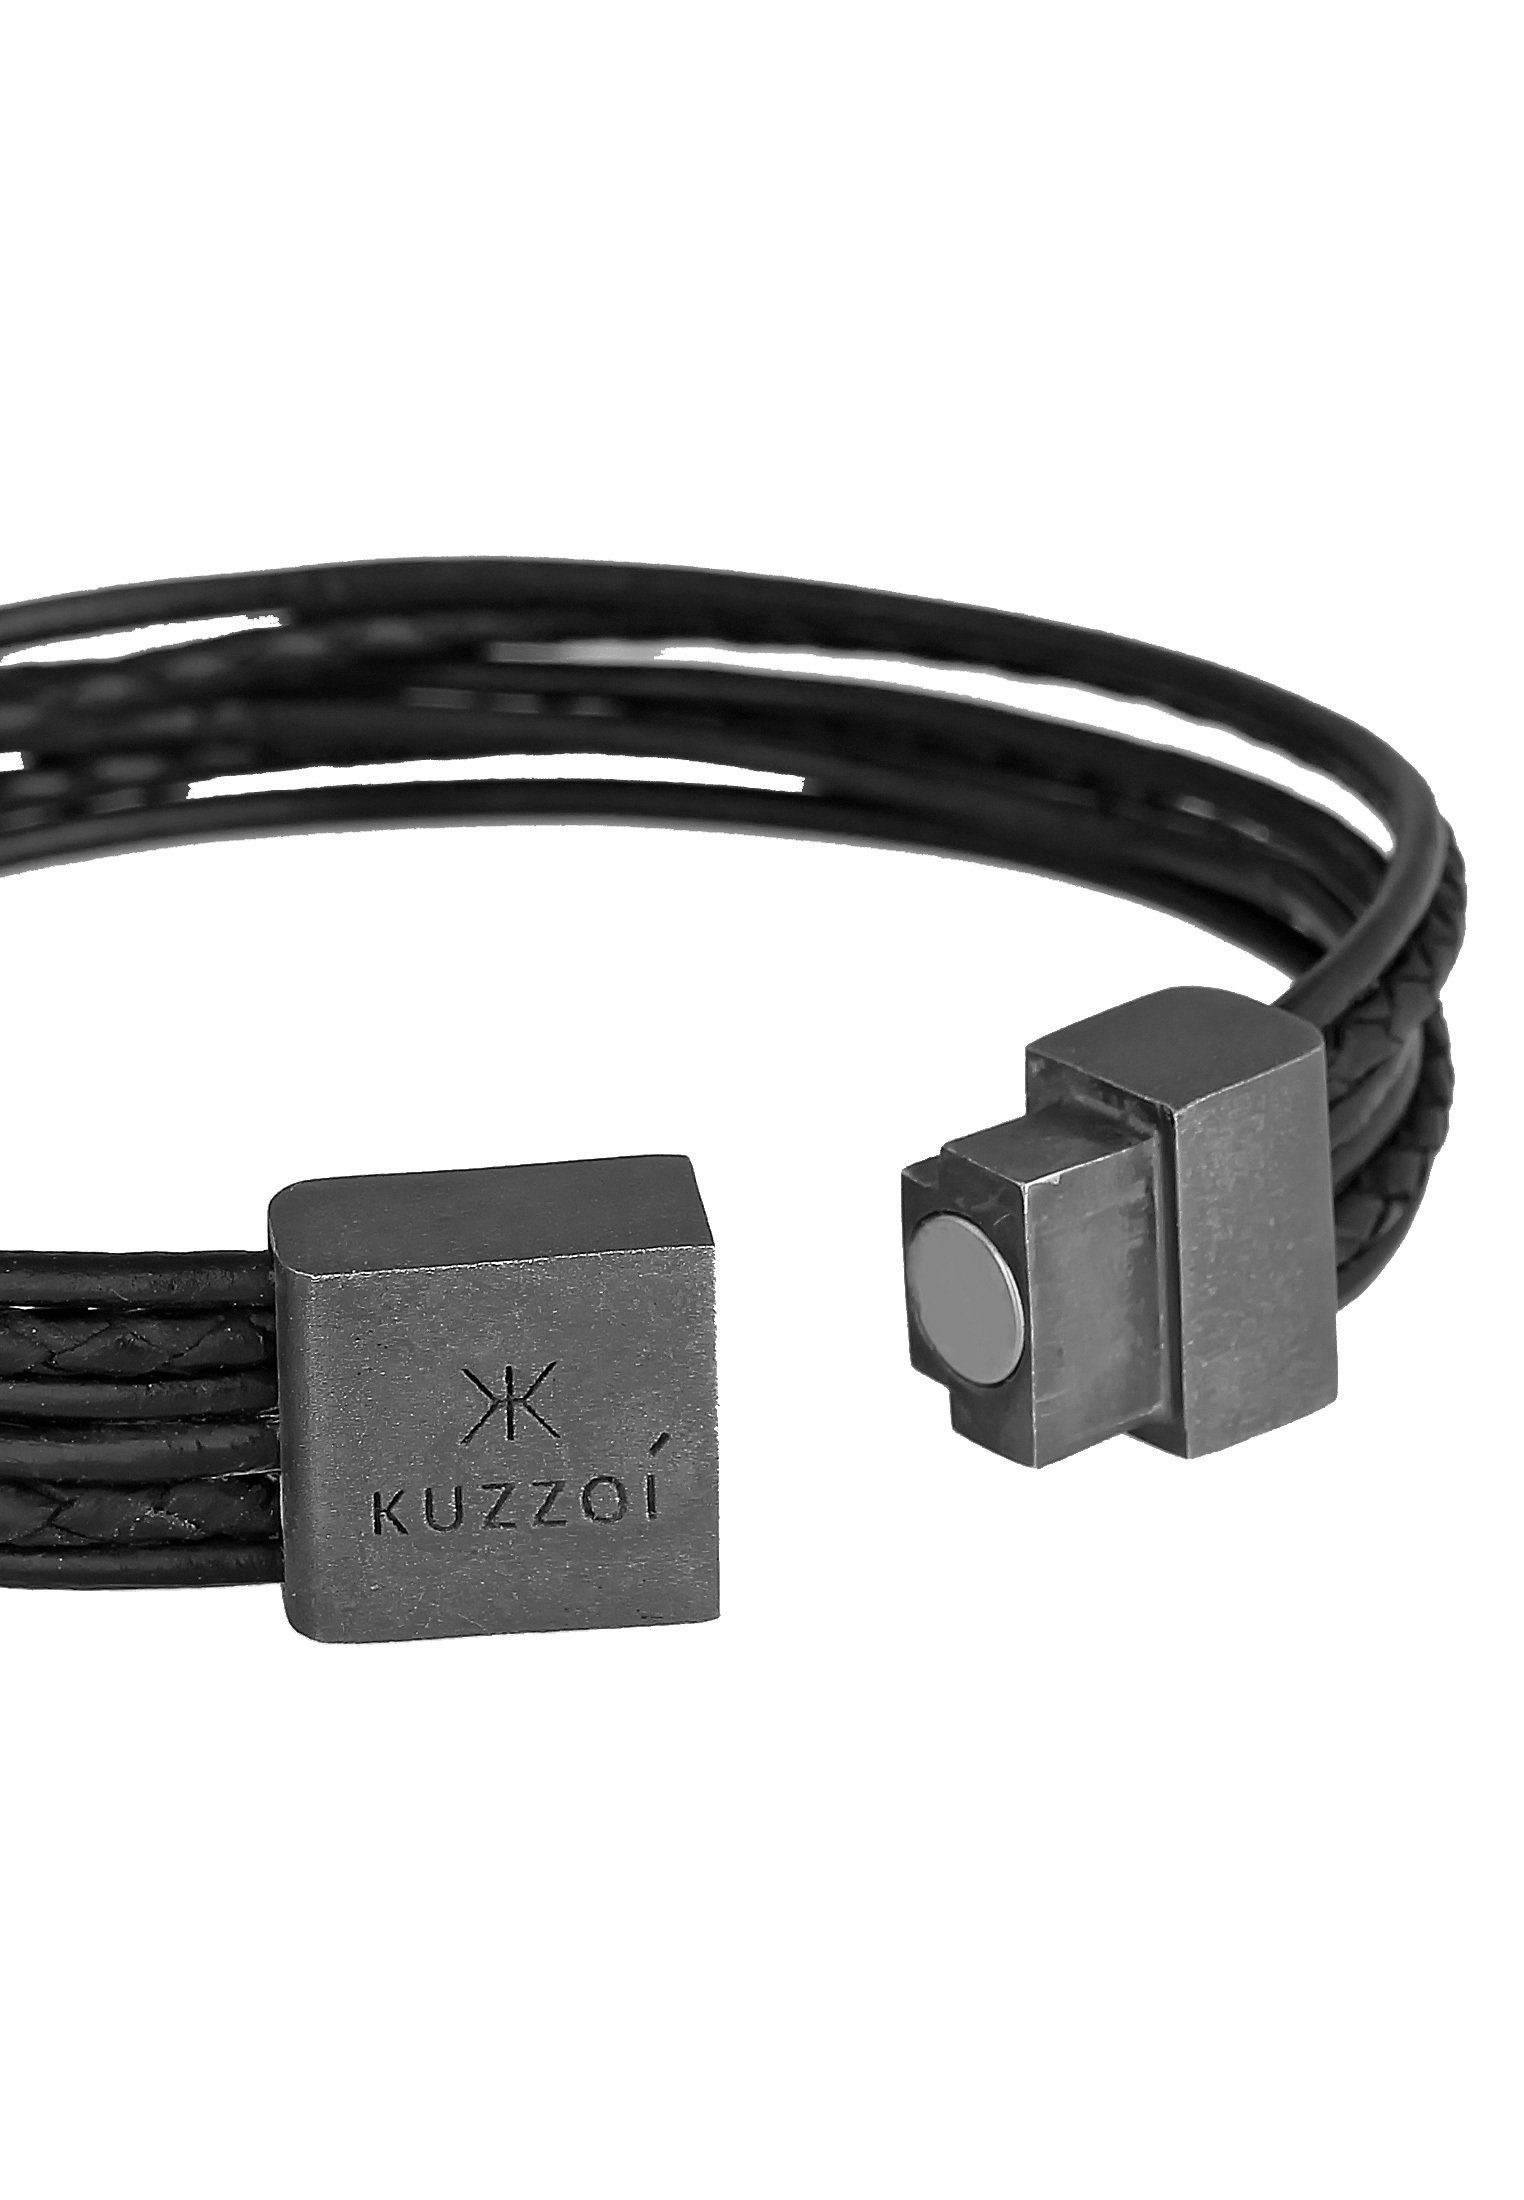 Silber 925 oxidiert Basic Leder Magnet Kuzzoi 6-reihig Armband